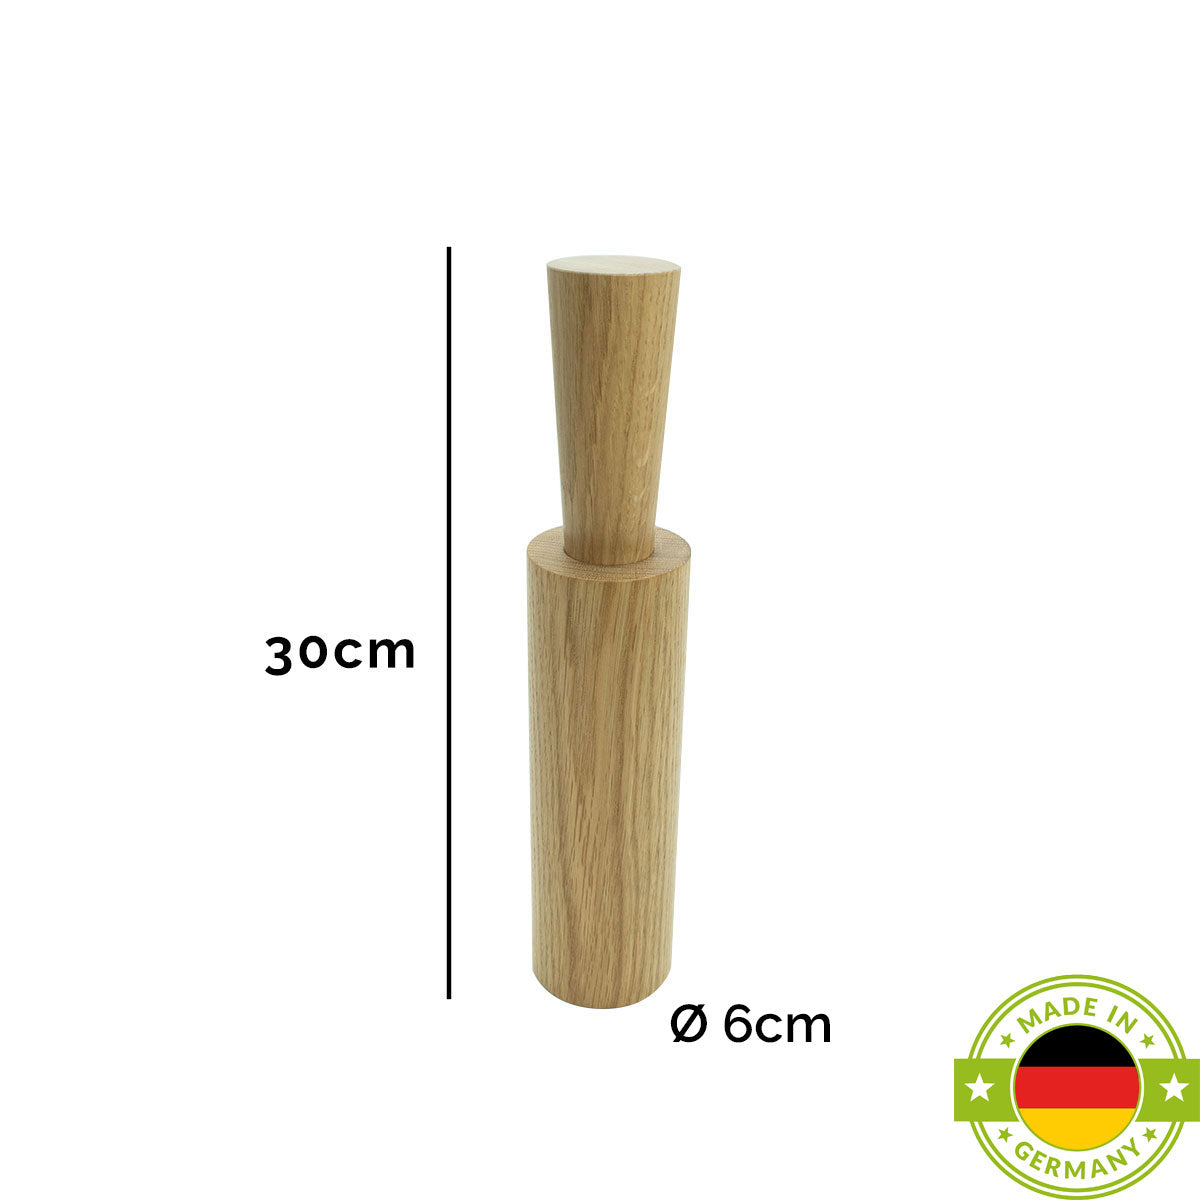 Salz- oder Pfeffermühle mit Porzellanmahlwerk | hoch | in verschiedenen Holzarten | mit Magnetkappe | DM 6 x H 29 cm